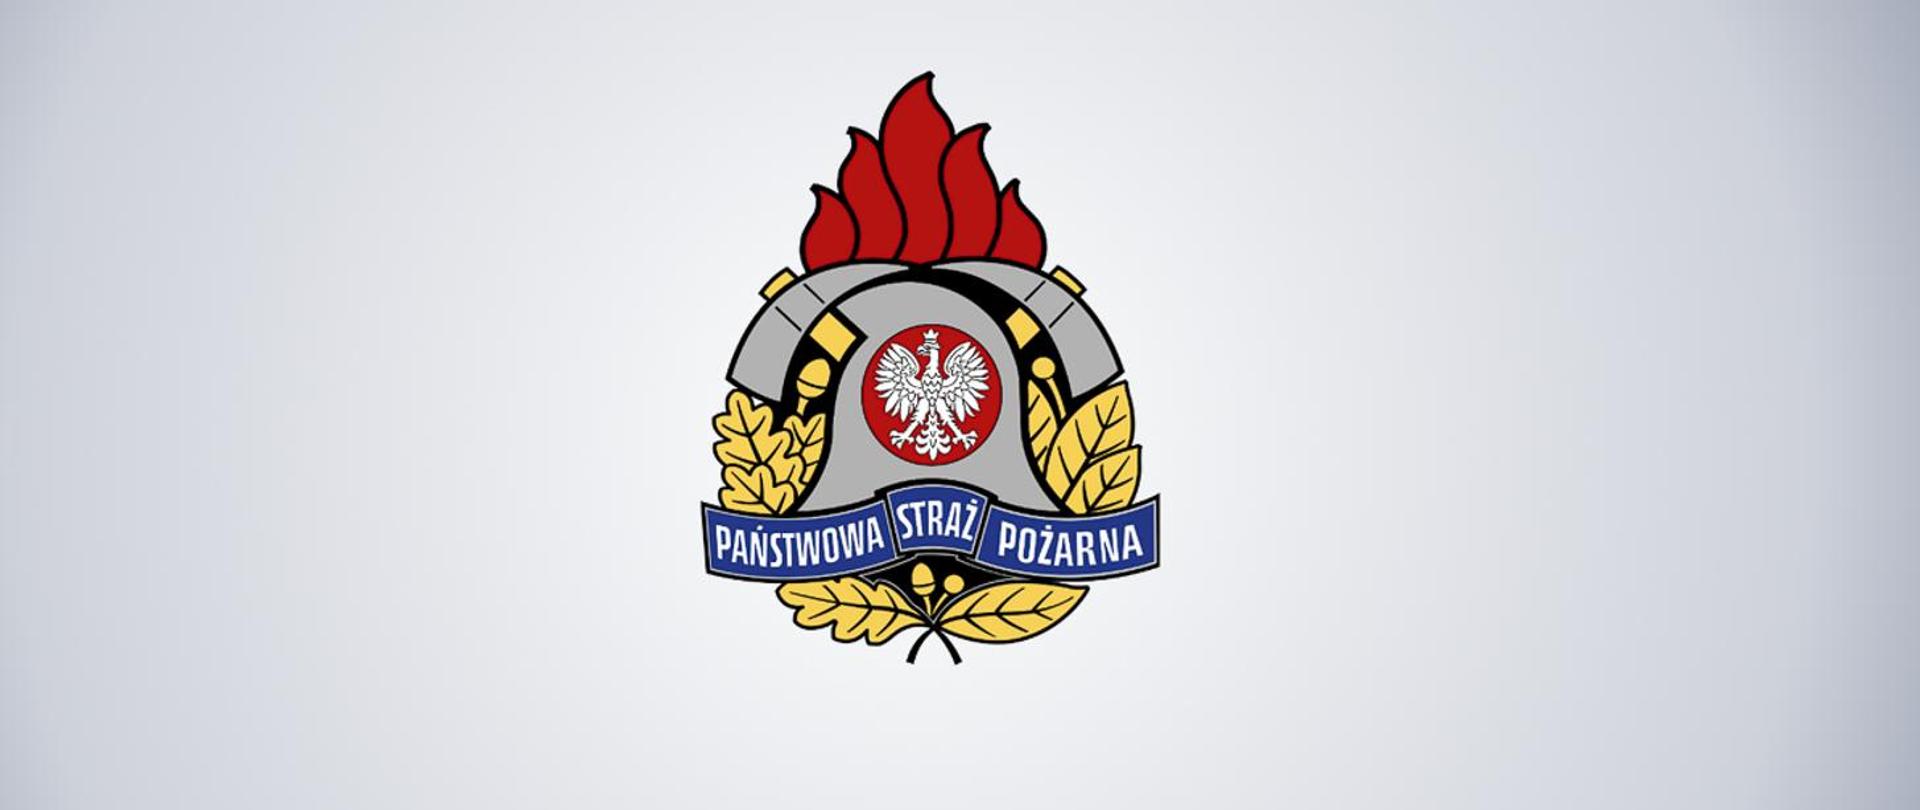 Logotyp PSP, w centrum znajduje się godło Państwa Polskiego – Orzeł Biały. Hełm strażacki, który okalają dwa toporki. Całość dopełnia złoty wieniec z liści oraz owoców dębu i wawrzynu.